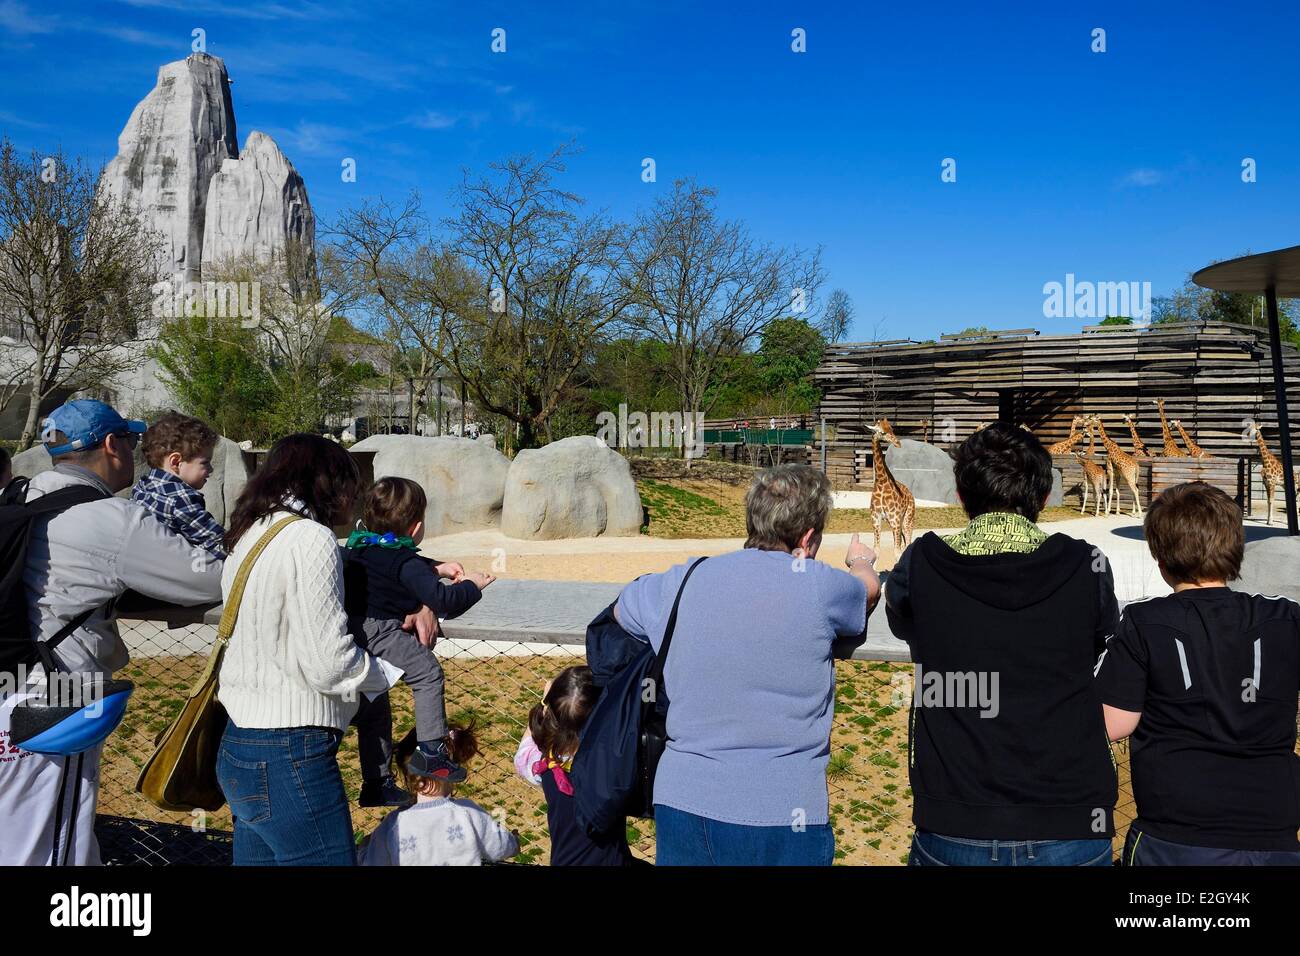 France Paris Parc Zoologique de Paris (Zoo de Vincennes) groupe de 16 girafes (Giraffa camelopardalis) dans la biozone Sahel-Sudan en arrière-plan grand rocher qui est vue de zoo depuis 1934 Banque D'Images